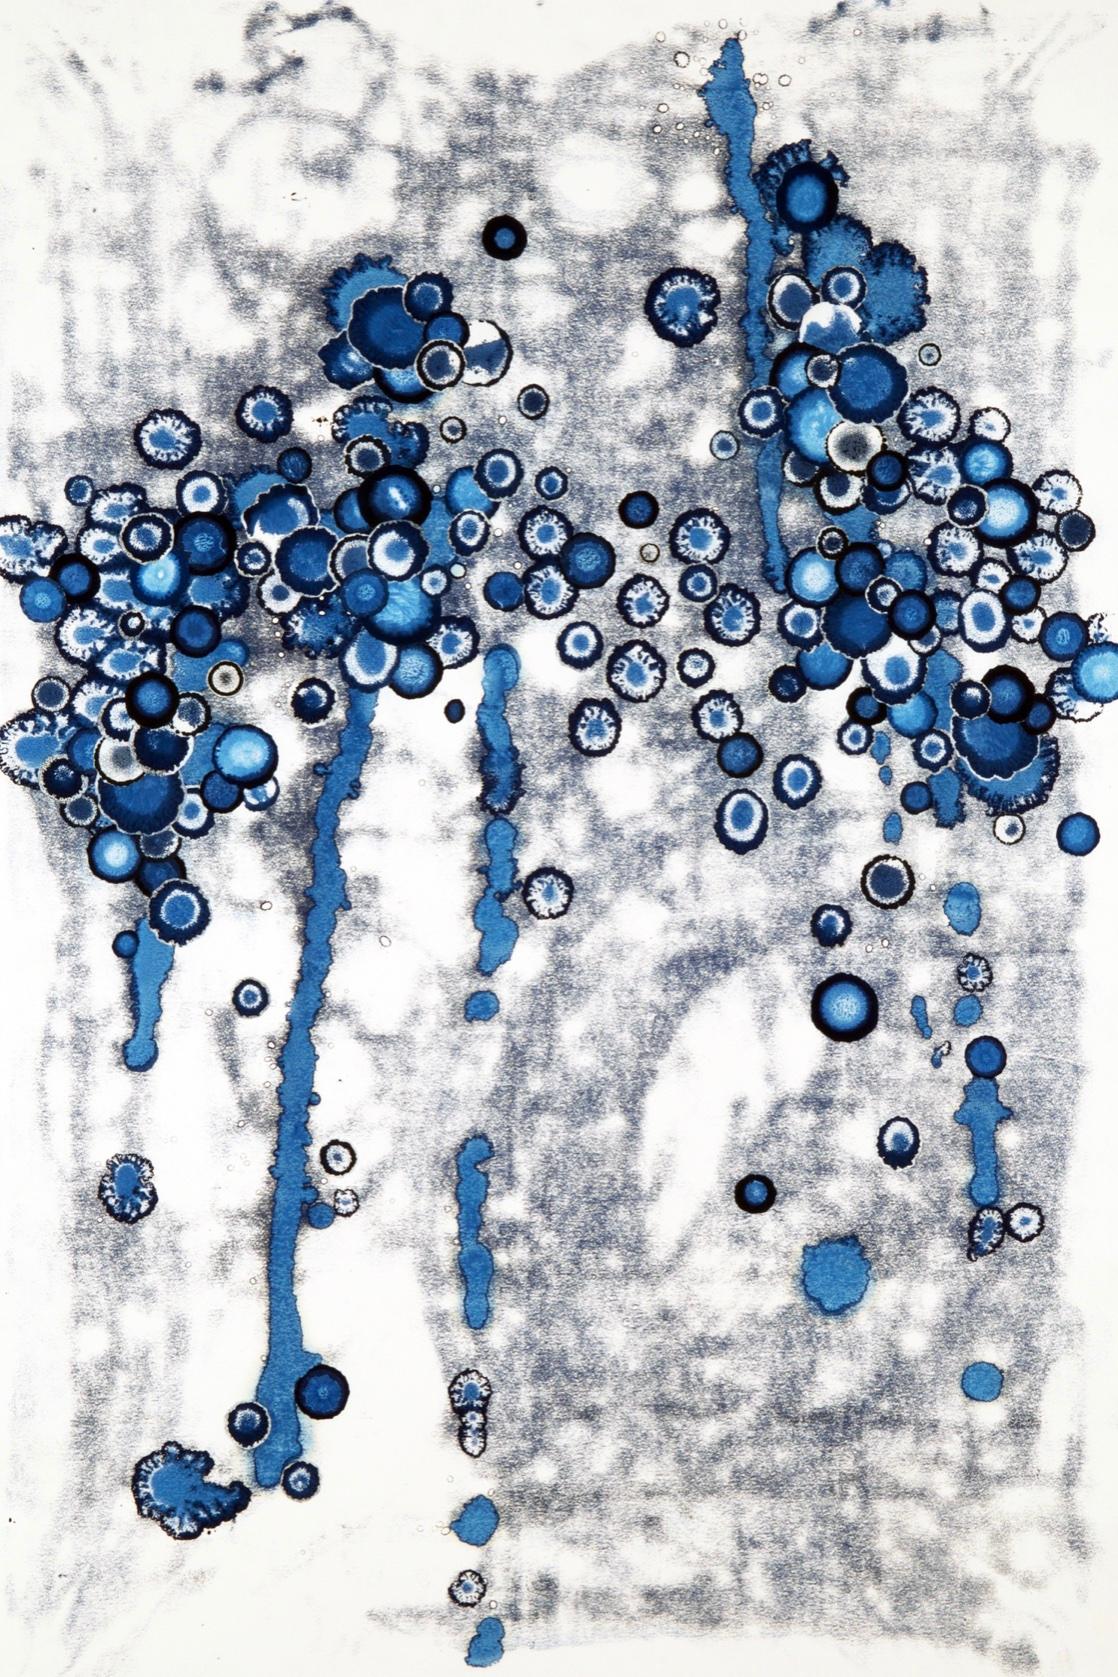 Abstract Painting Alyssa Warren - "Série 9, n°04" peinture abstraite à l'encre de points dégoulinants dans des nuances de bleu